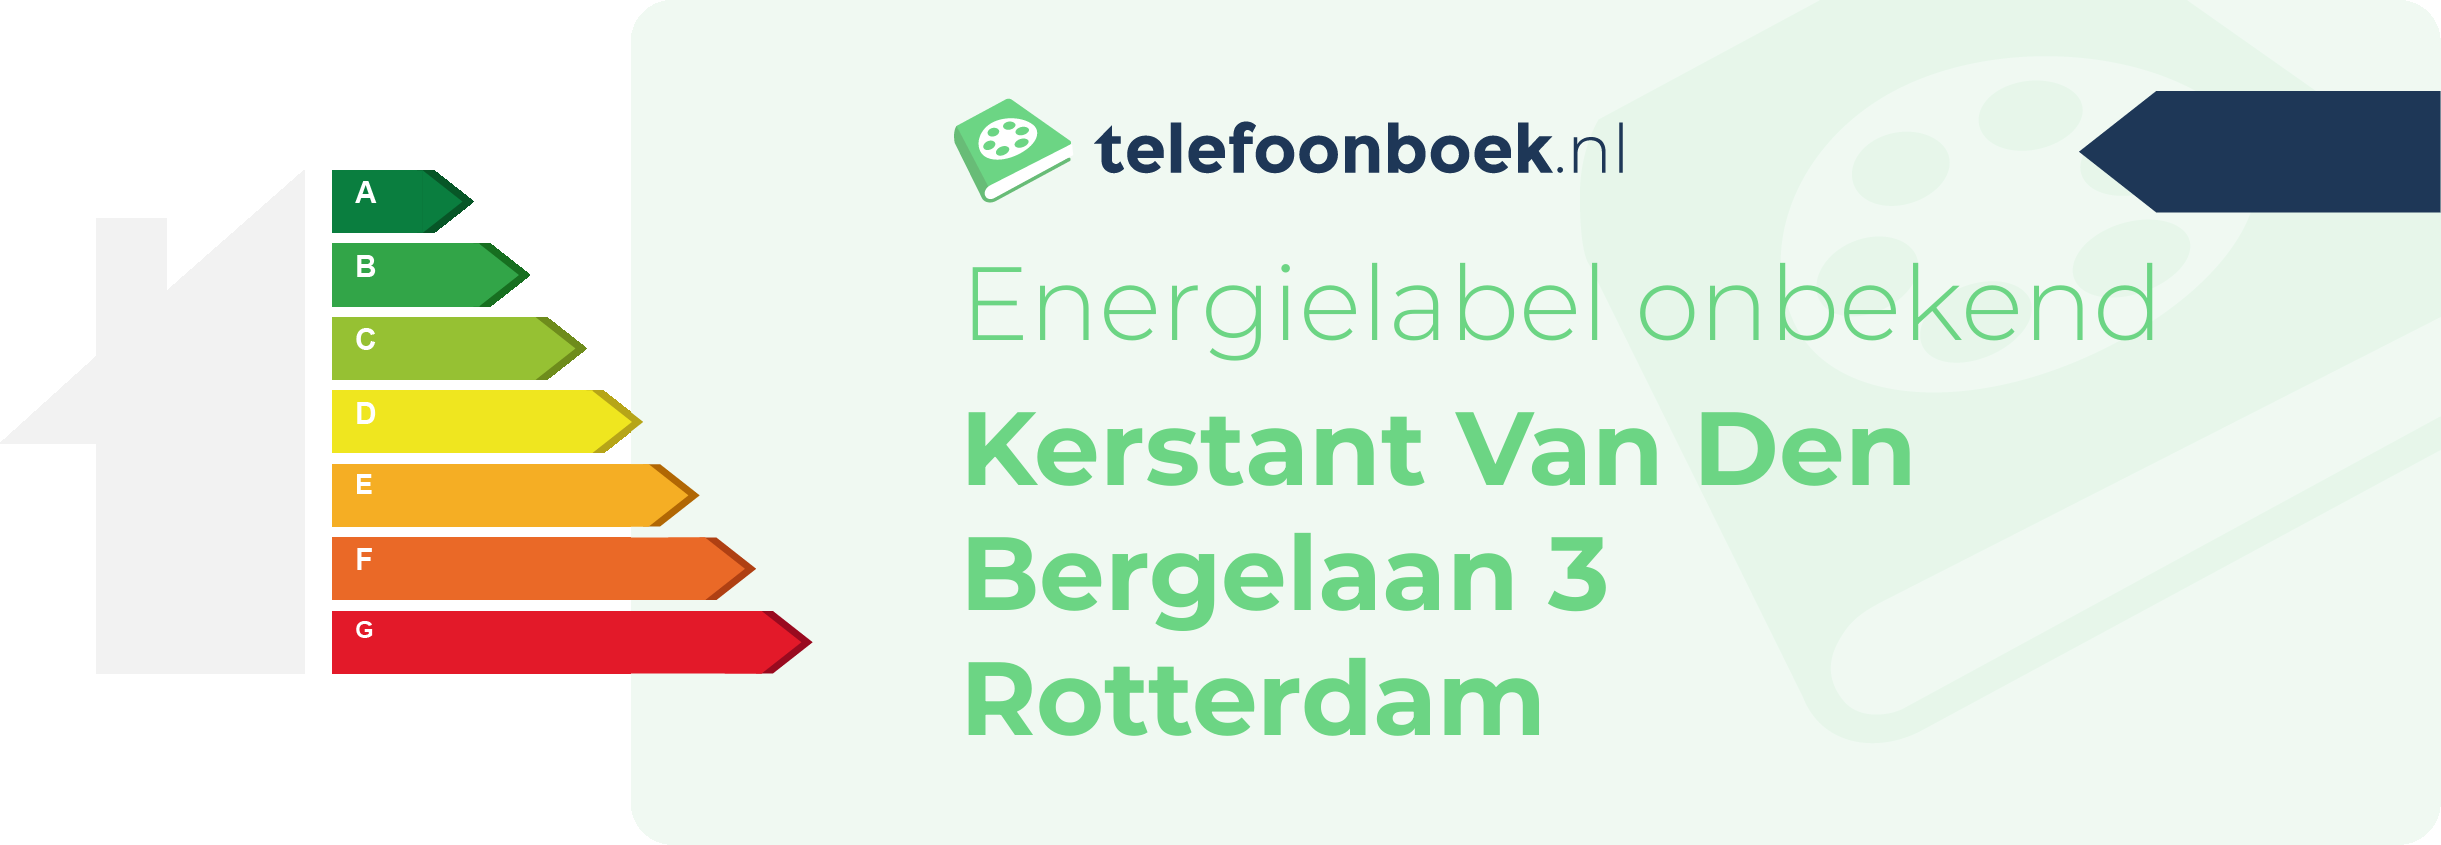 Energielabel Kerstant Van Den Bergelaan 3 Rotterdam